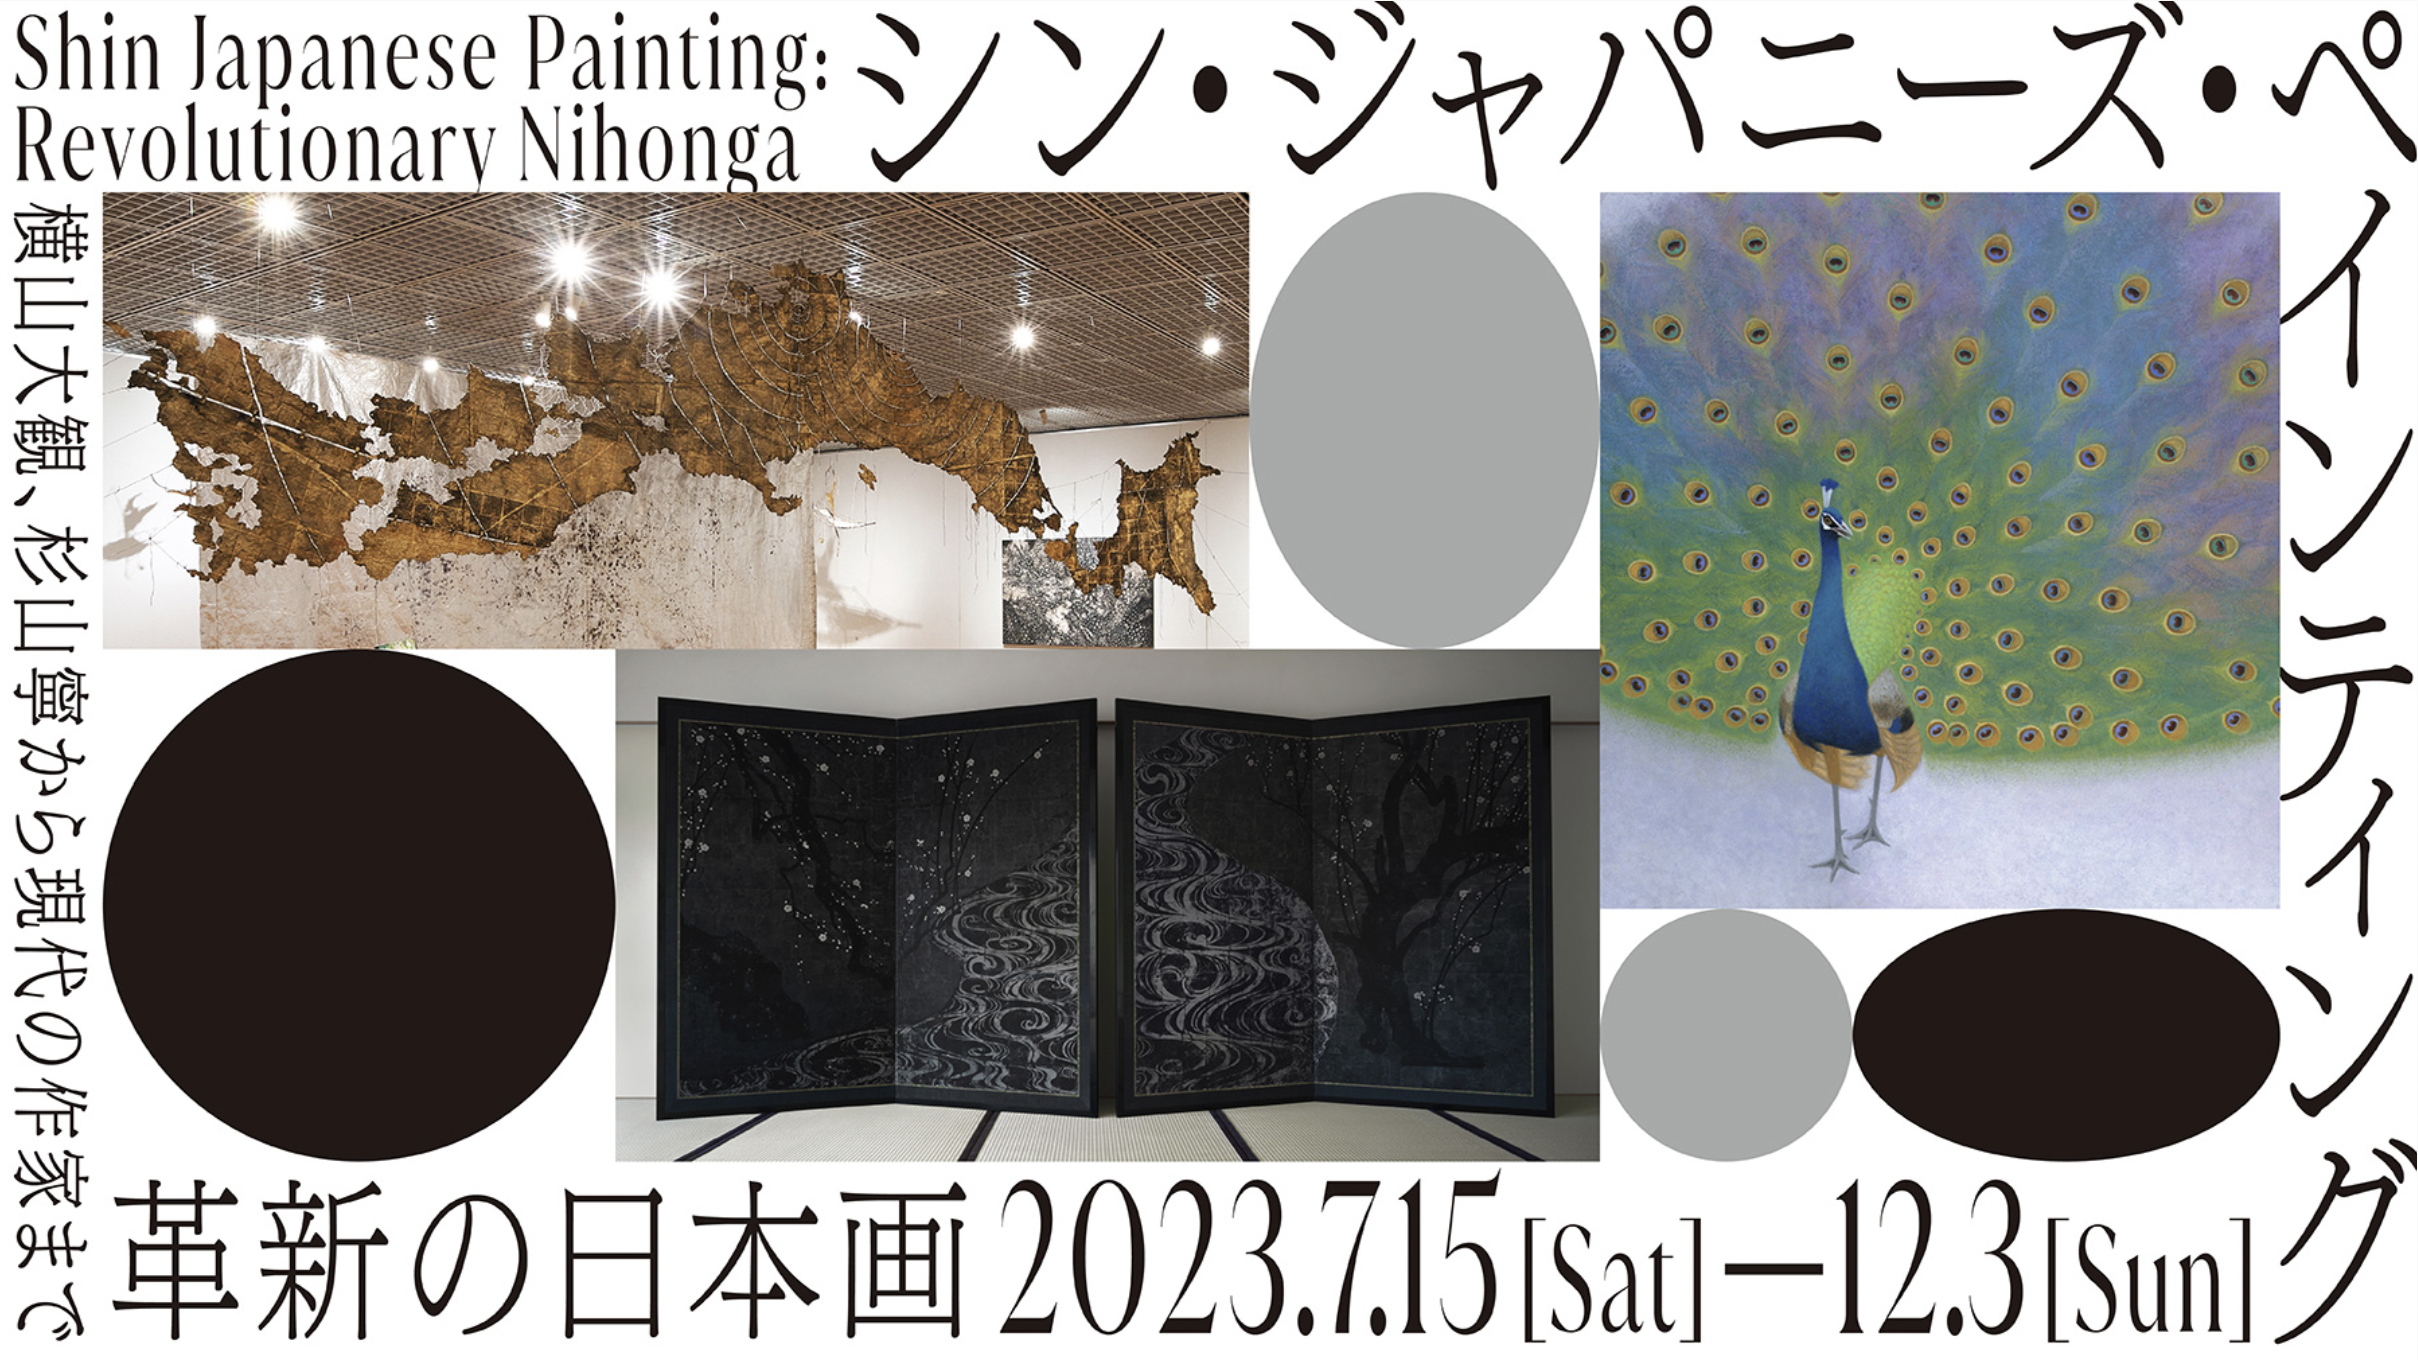 ポーラ美術館13年ぶりとなる日本画の企画展は「シン・ジャパニーズ ...